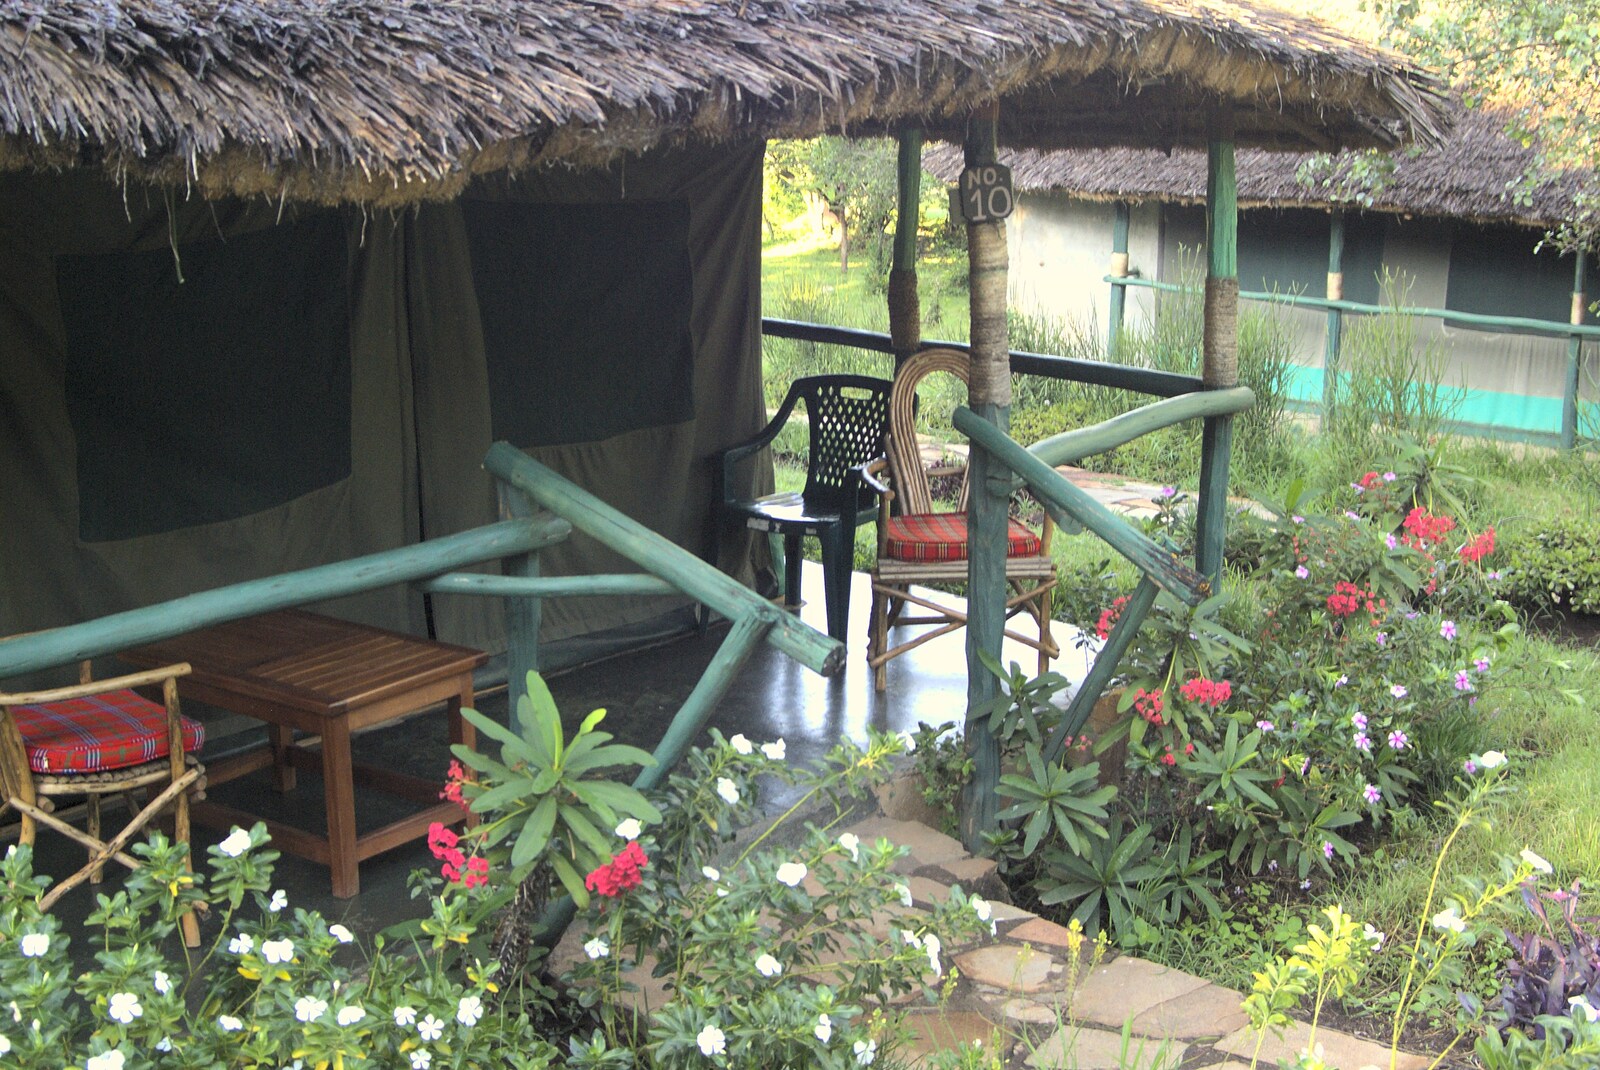 Our patio, on hut number 10 from Maasai Mara Safari and a Maasai Village, Ololaimutia, Kenya - 5th November 2010